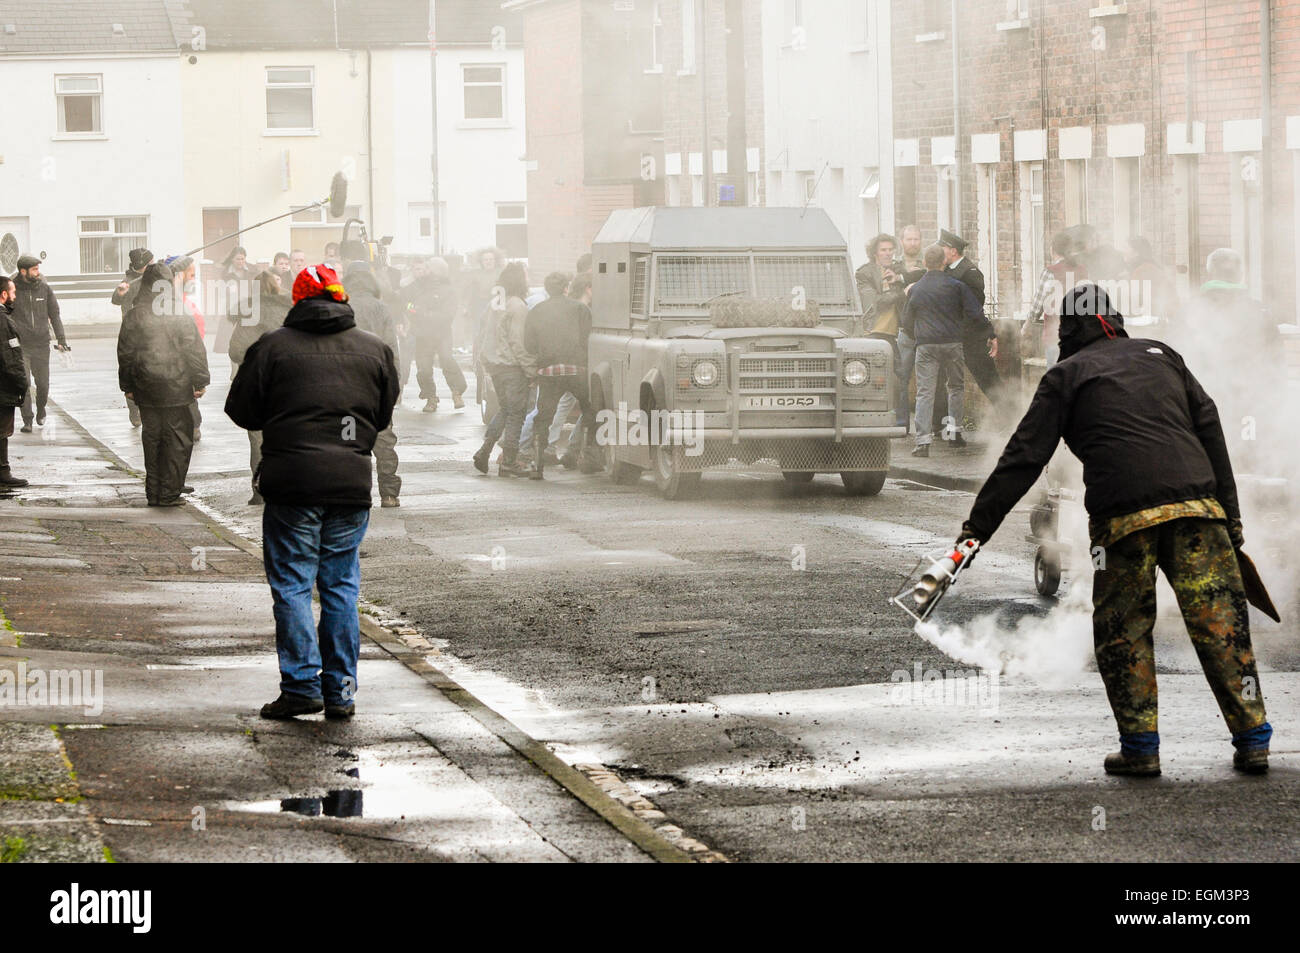 Belfast, Nordirland. 18. Dezember 2014 - weiterhin Dreharbeiten für U2 Musikvideo für den Song "Every Breaking Wave". Stockfoto